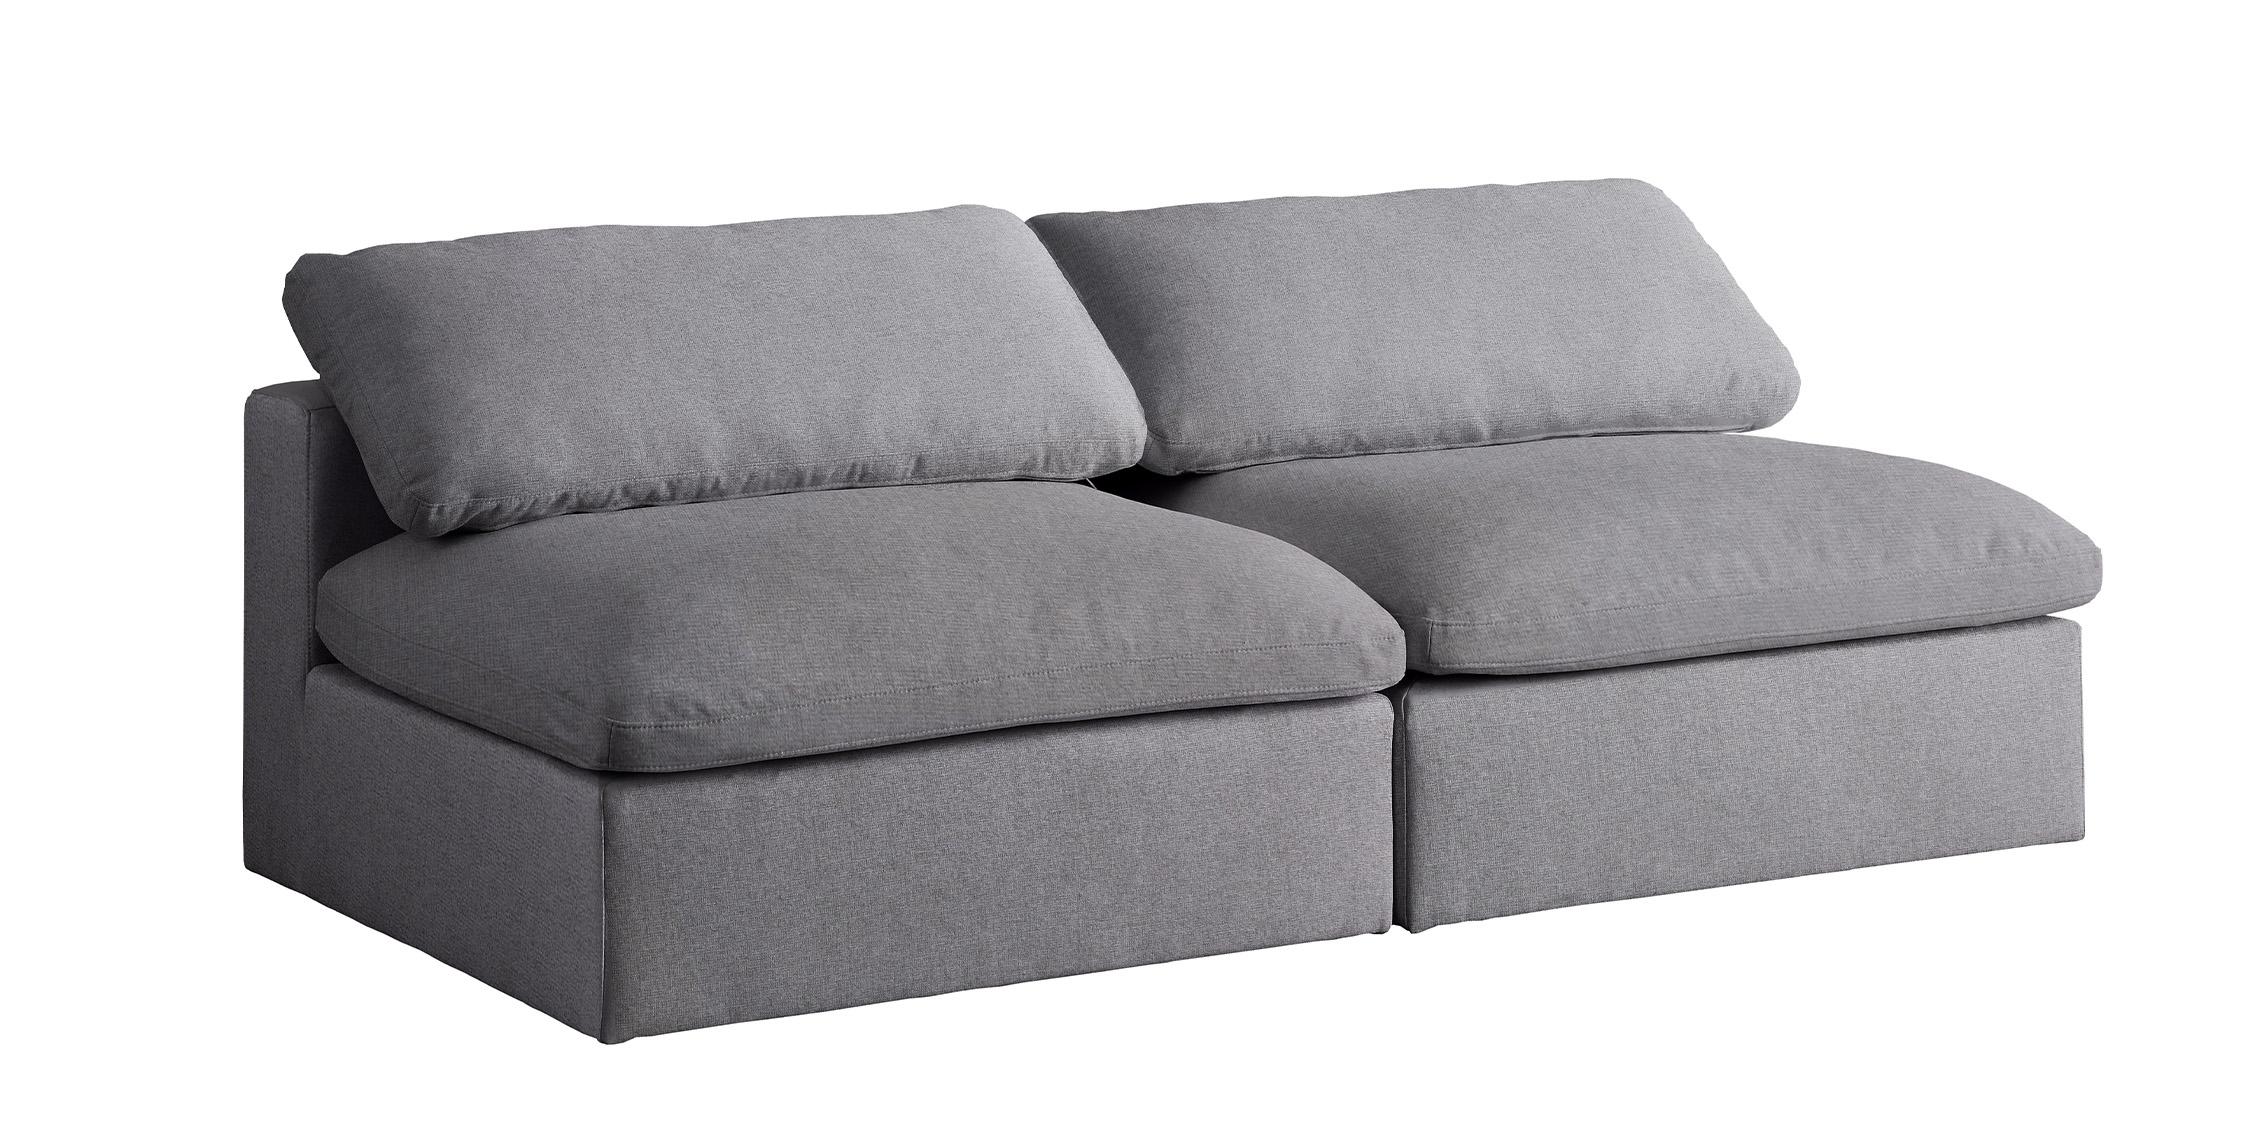 Contemporary, Modern Modular Sofa SERENE 601Grey-S78 601Grey-S78 in Gray Linen